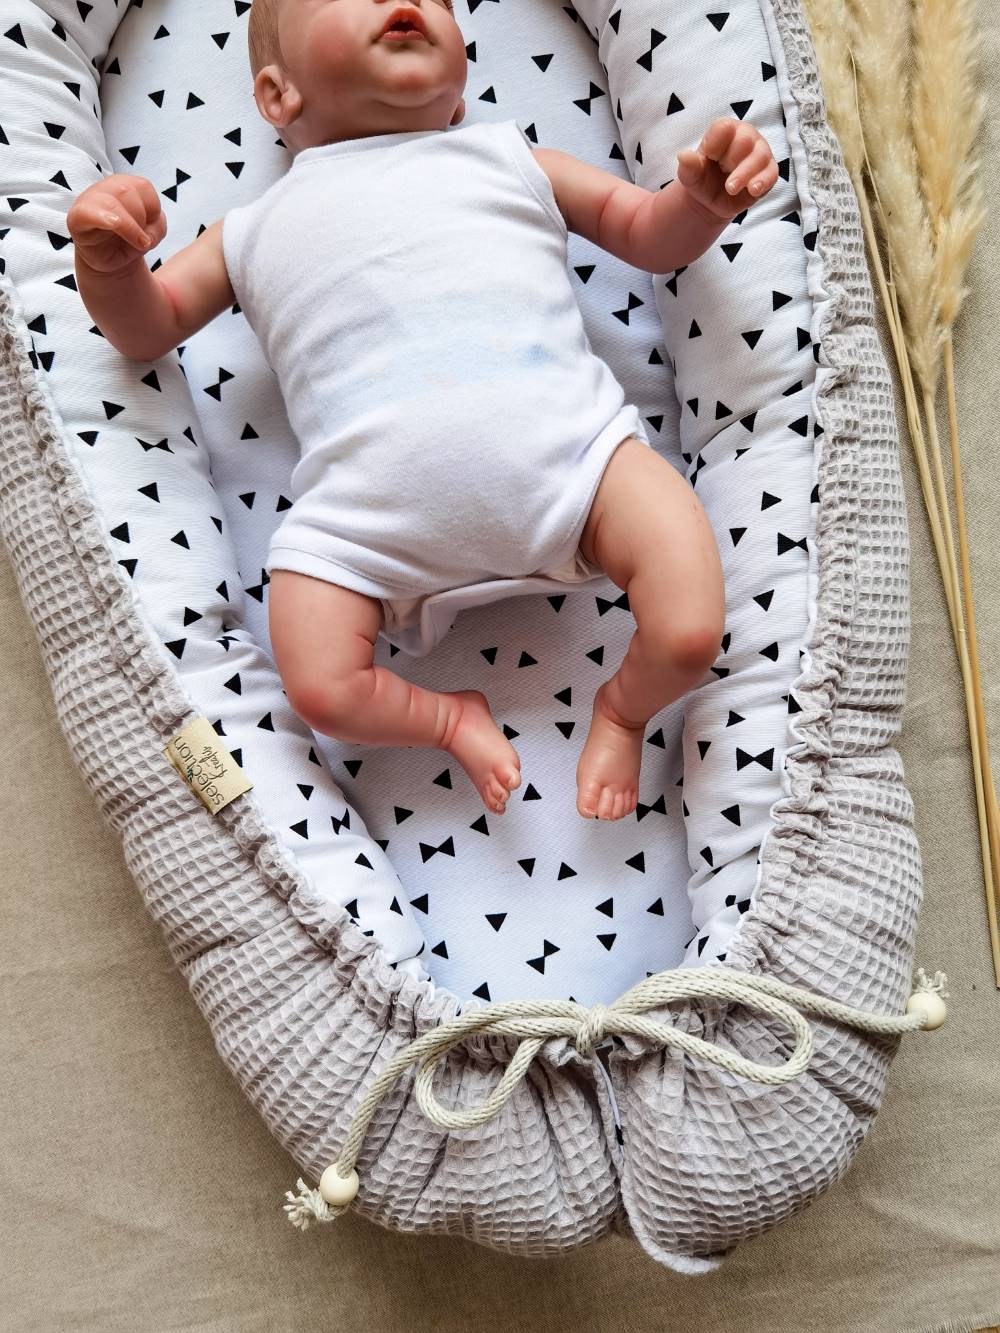 Selectionkreativ - Babynest in einem tollen Grauton mit Baby liegend im Nestchen 